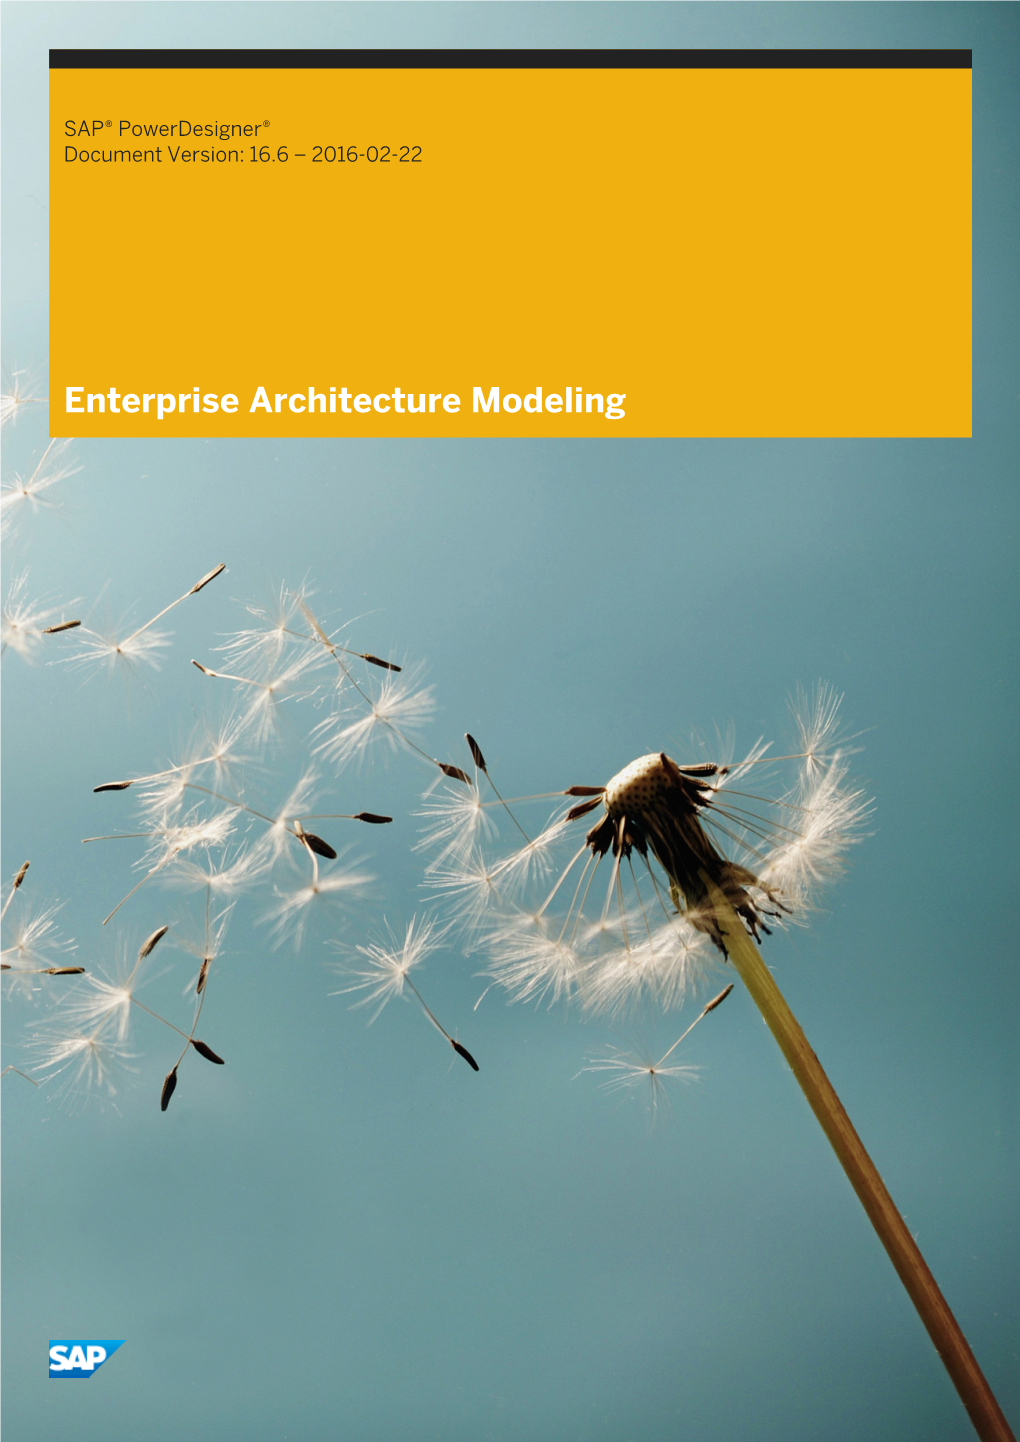 Enterprise Architecture Modeling Content